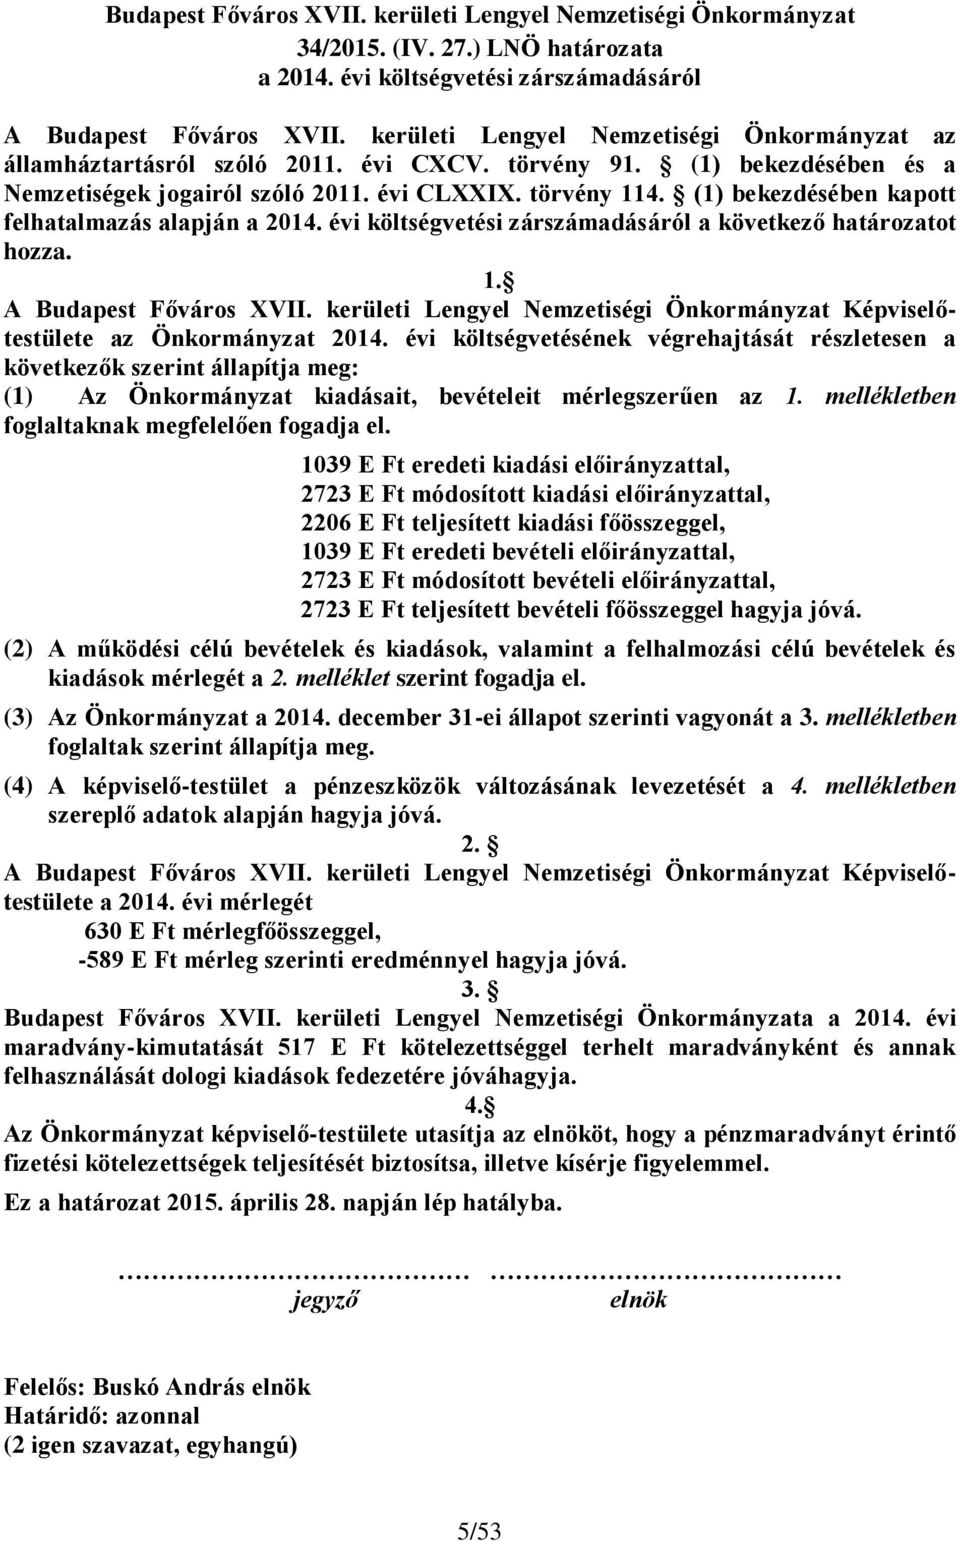 (1) bekezdésében kapott felhatalmazás alapján a 2014. évi költségvetési zárszámadásáról a következő határozatot hozza. 1. A Budapest Főváros XVII.